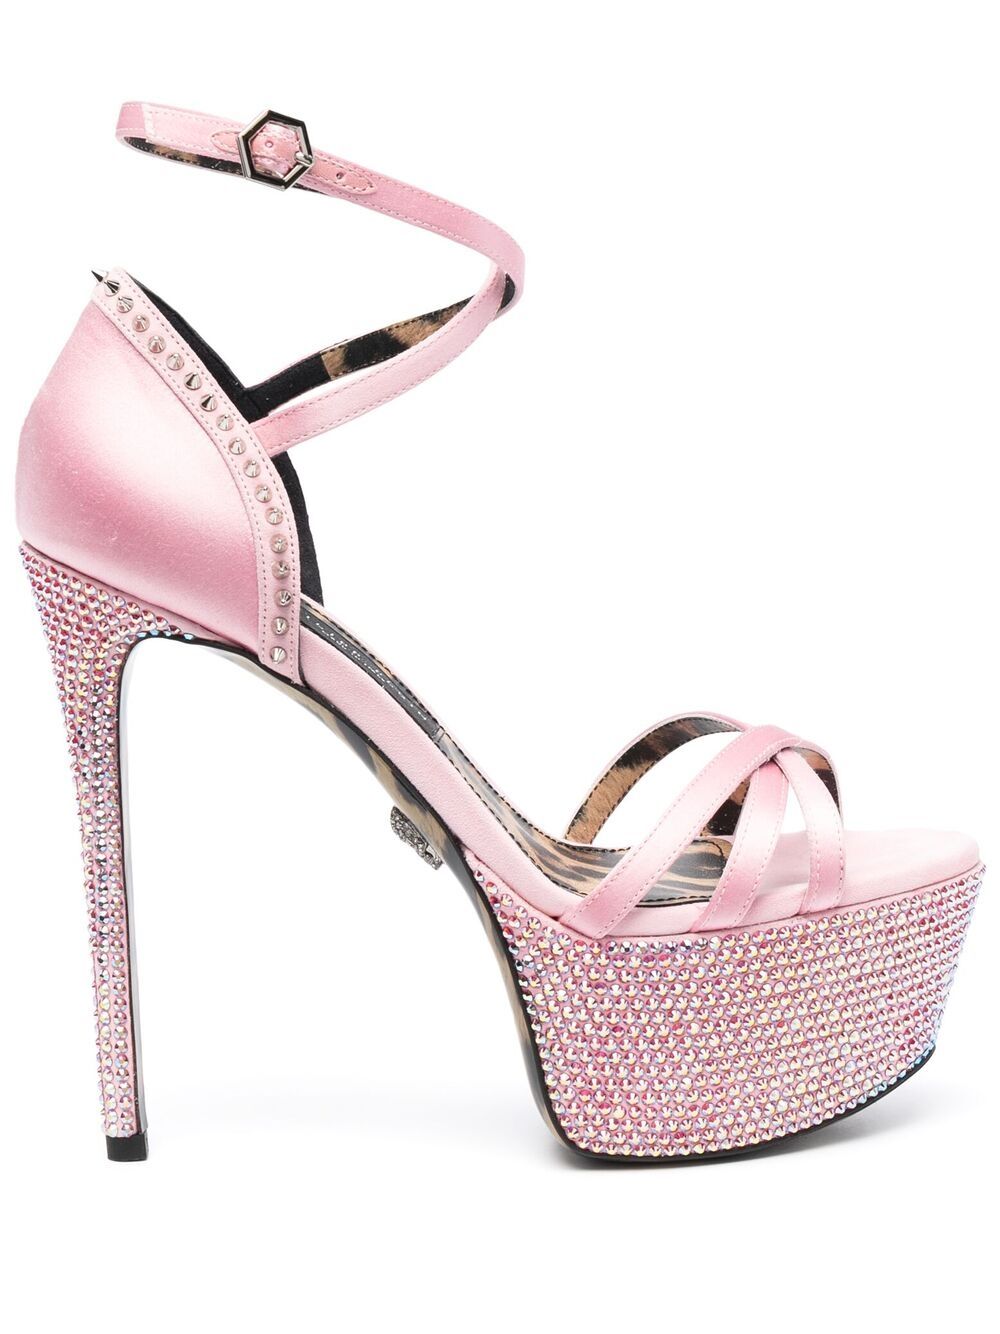 Philipp Plein embellished satin platform sandals - Pink von Philipp Plein